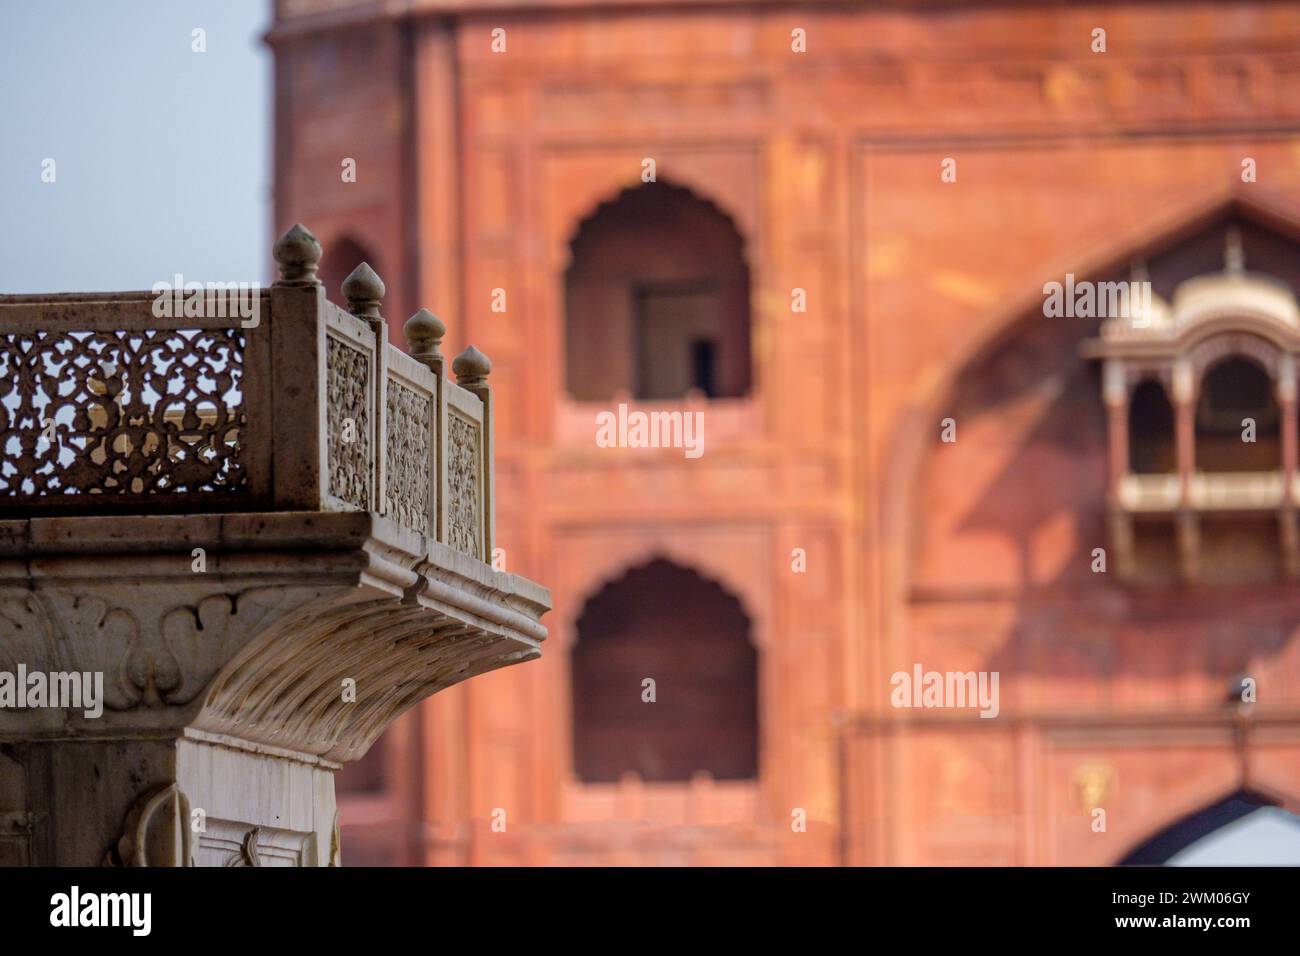 Islamische Architektur in der Jama Masjid Moschee in Delhi, der größten Moschee Indiens Stockfoto